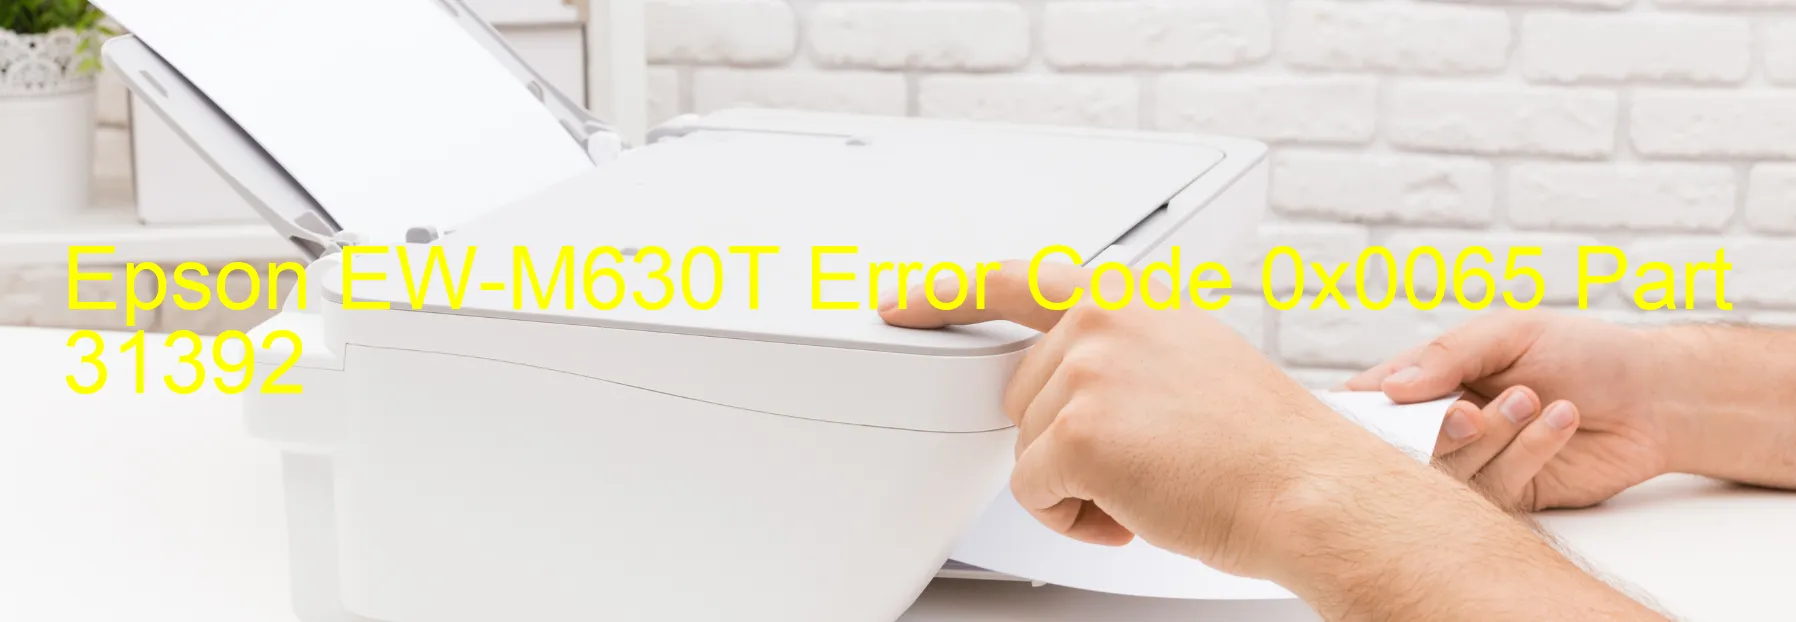 Epson EW-M630T Error Code 0x0065 Part 31392